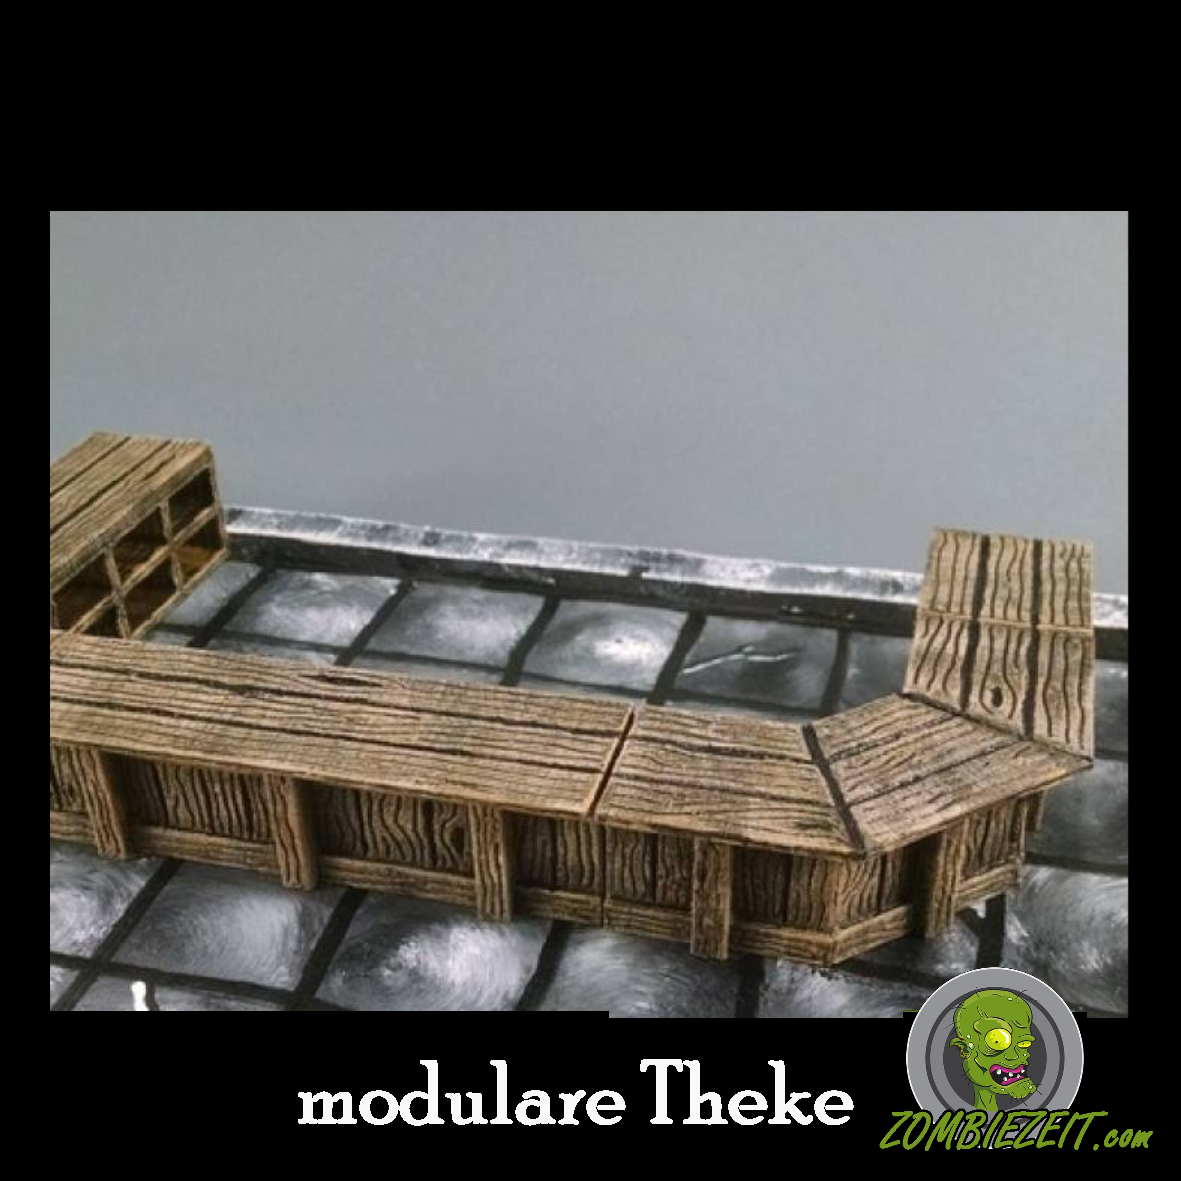 modulare Theke